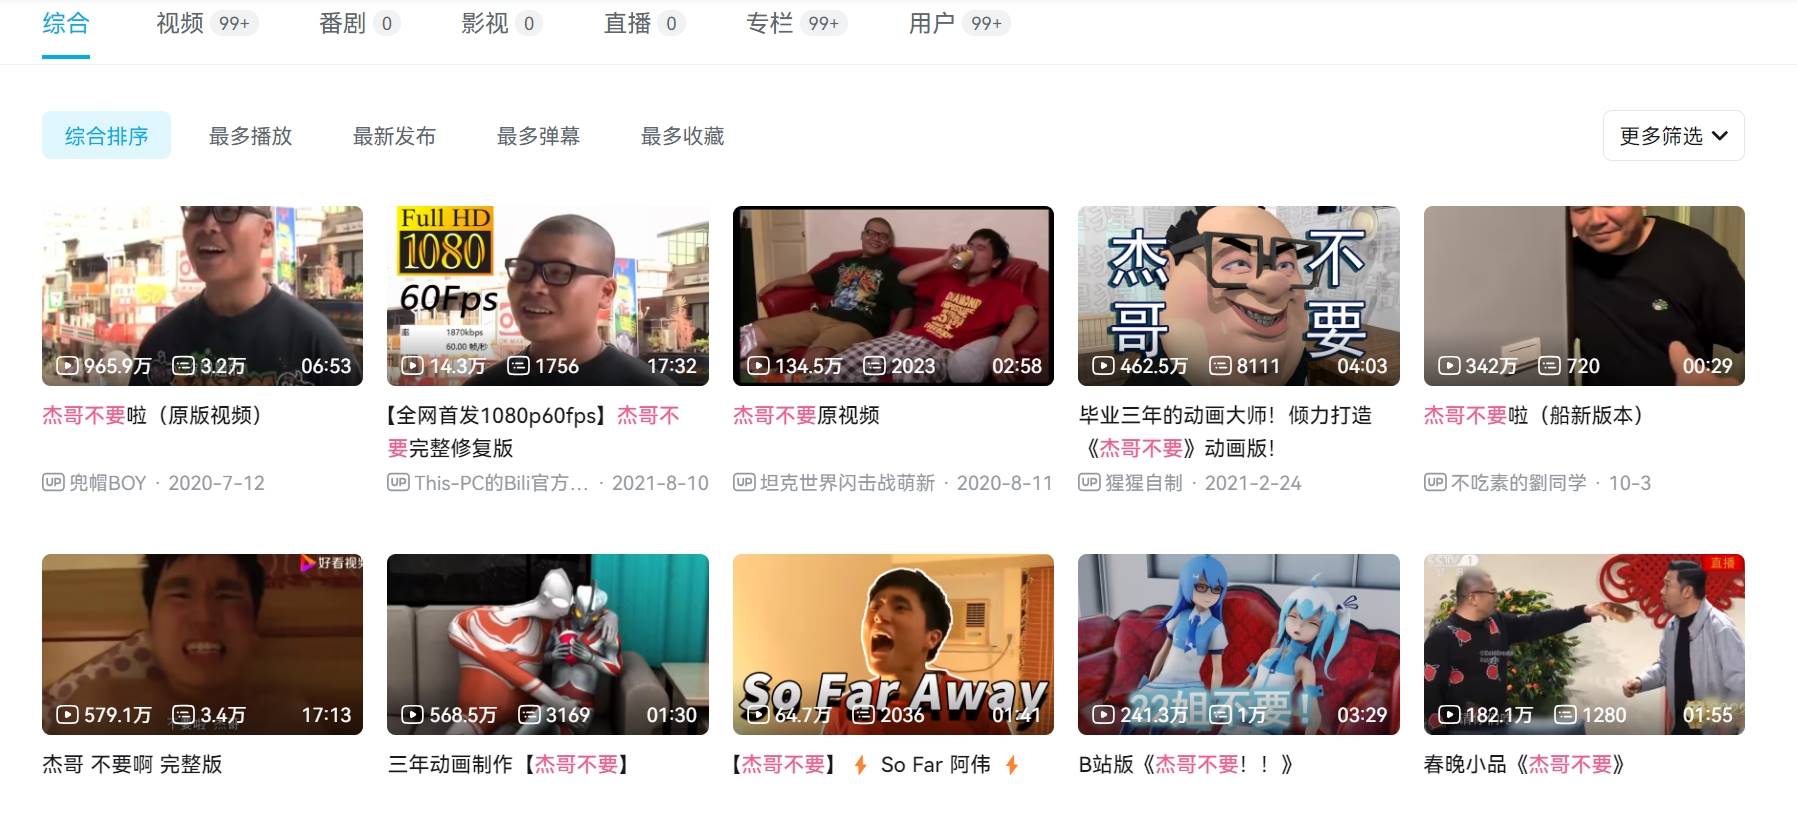 中國知名影音網站「bilibli」上也有許多「杰哥不要」相關影片